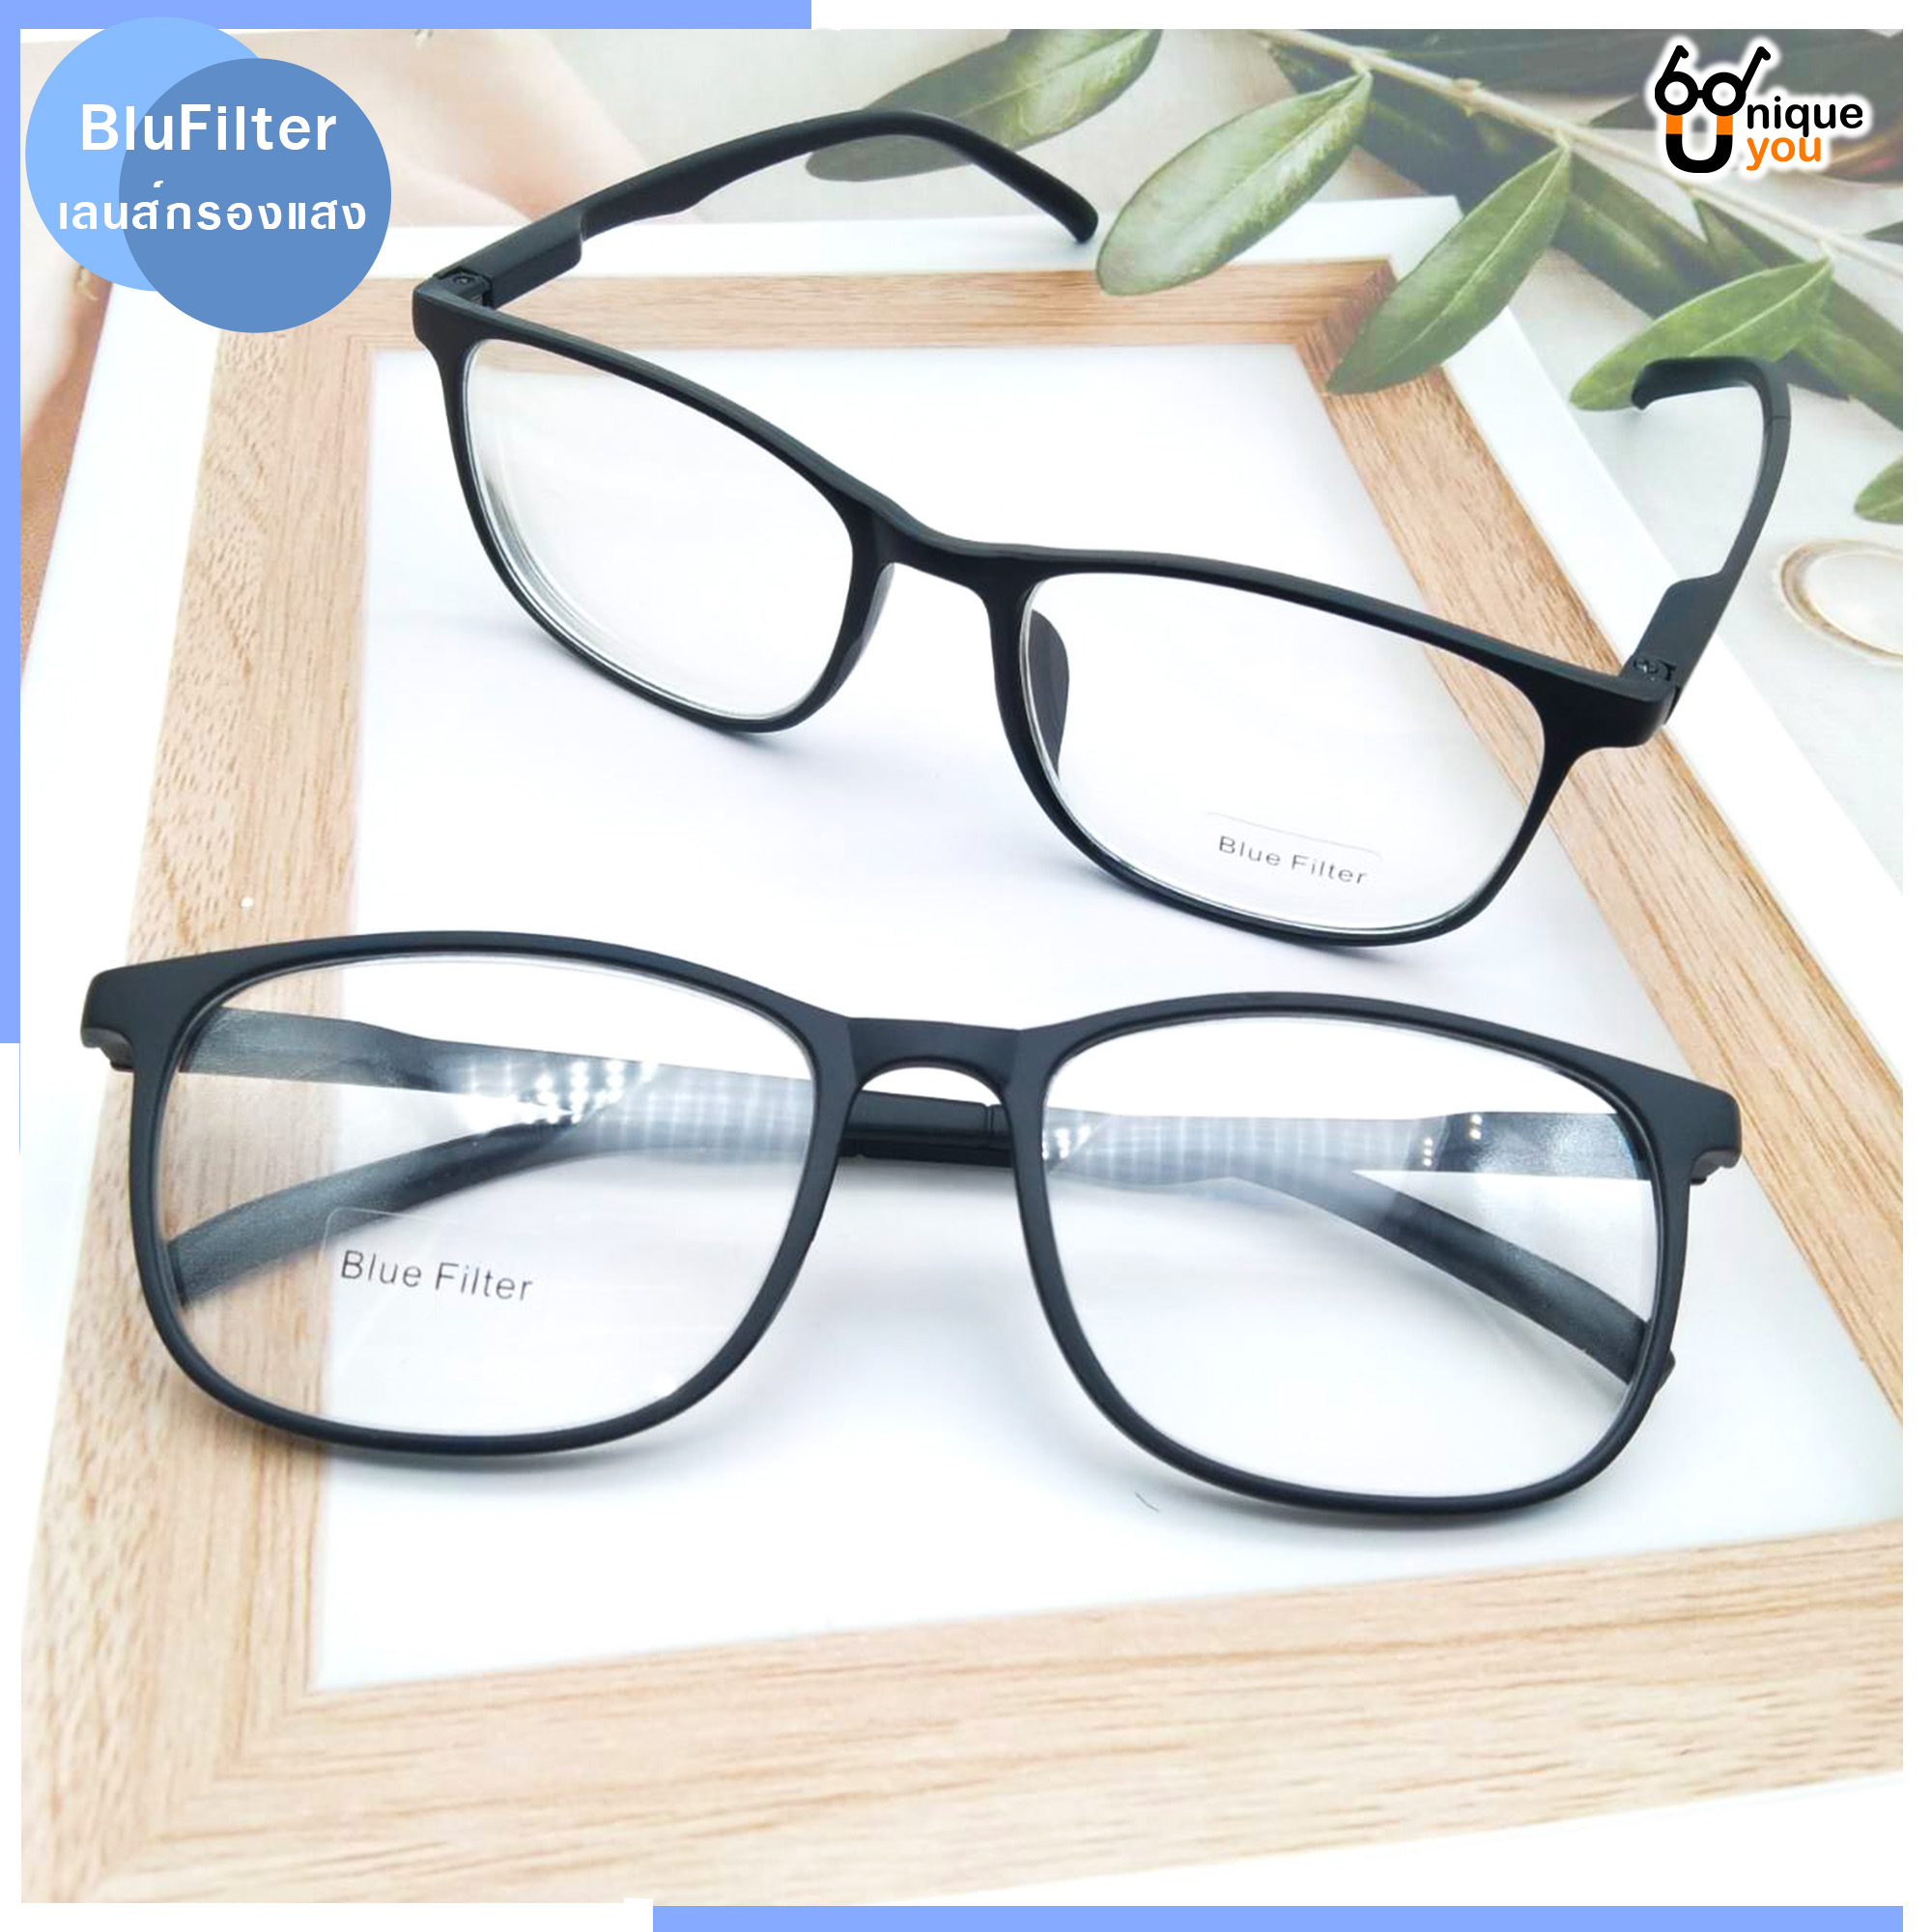 มุมมองเพิ่มเติมเกี่ยวกับ Uniq แว่นสายตาสั้น แว่นสายตายาว เลนส์กรองแสงสีฟ้า Blue Filter แว่นตาขาสปริง แว่นสายตา แว่นตาเลนส์กรองแสง แว่นกรองแสง